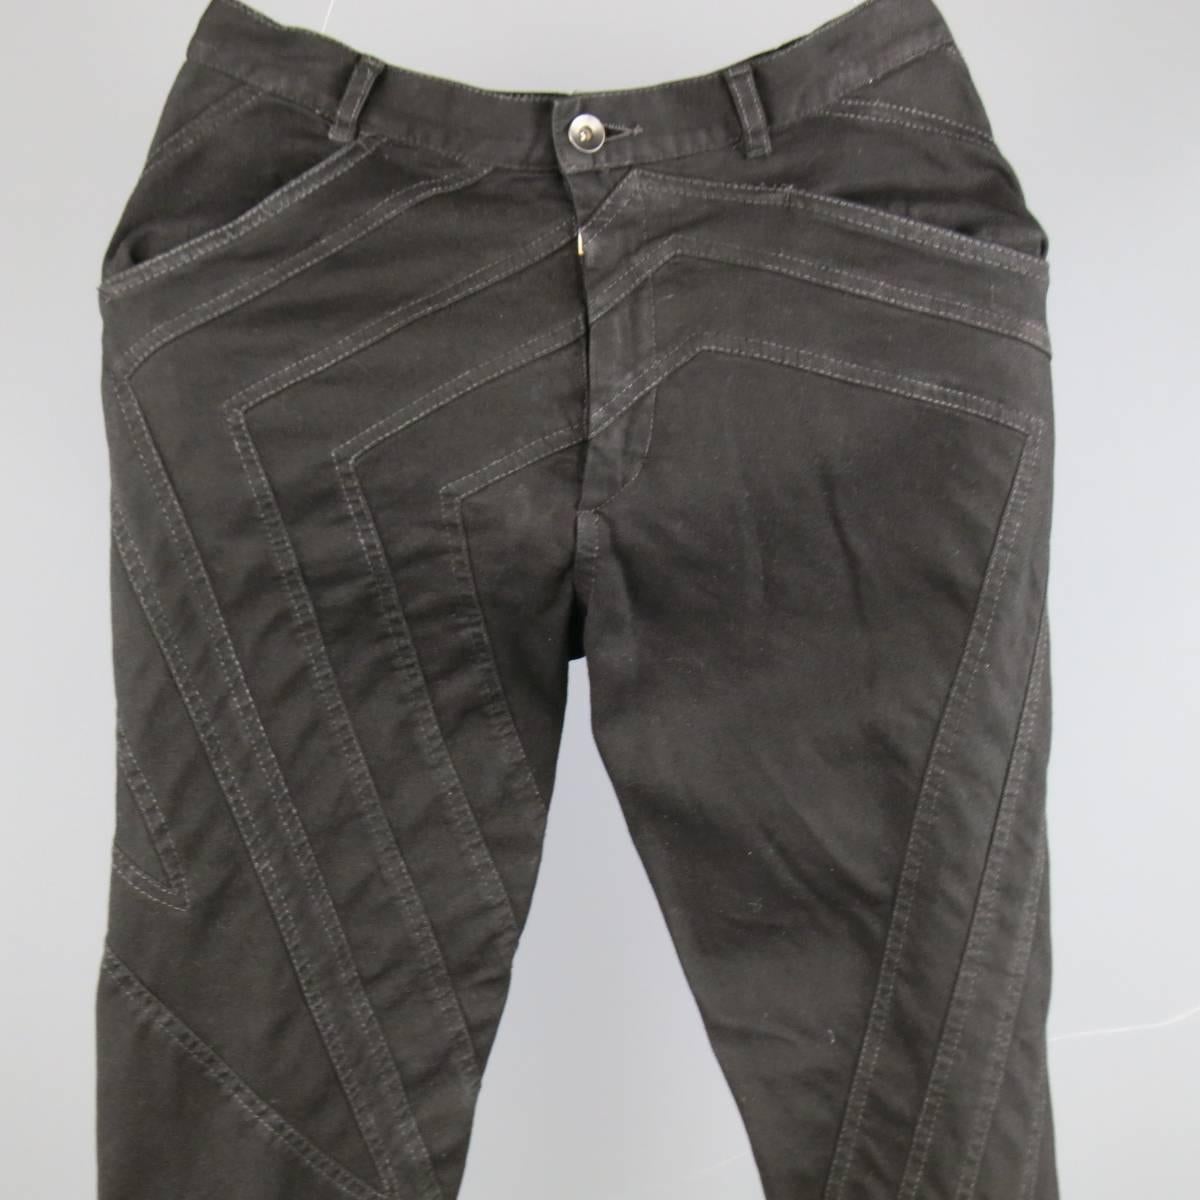 Seltene frühe GARETH PUGH Skinny-Jeans aus weichem, schwarzem, halb beschichtetem Baumwoll-Denim-Twill mit hoher Leibhöhe, Reißverschluss und sternförmigem Patchwork-Panel. Ein Bein ist etwas länger. Wie es ist. Hergestellt in Italien.
 
Guter